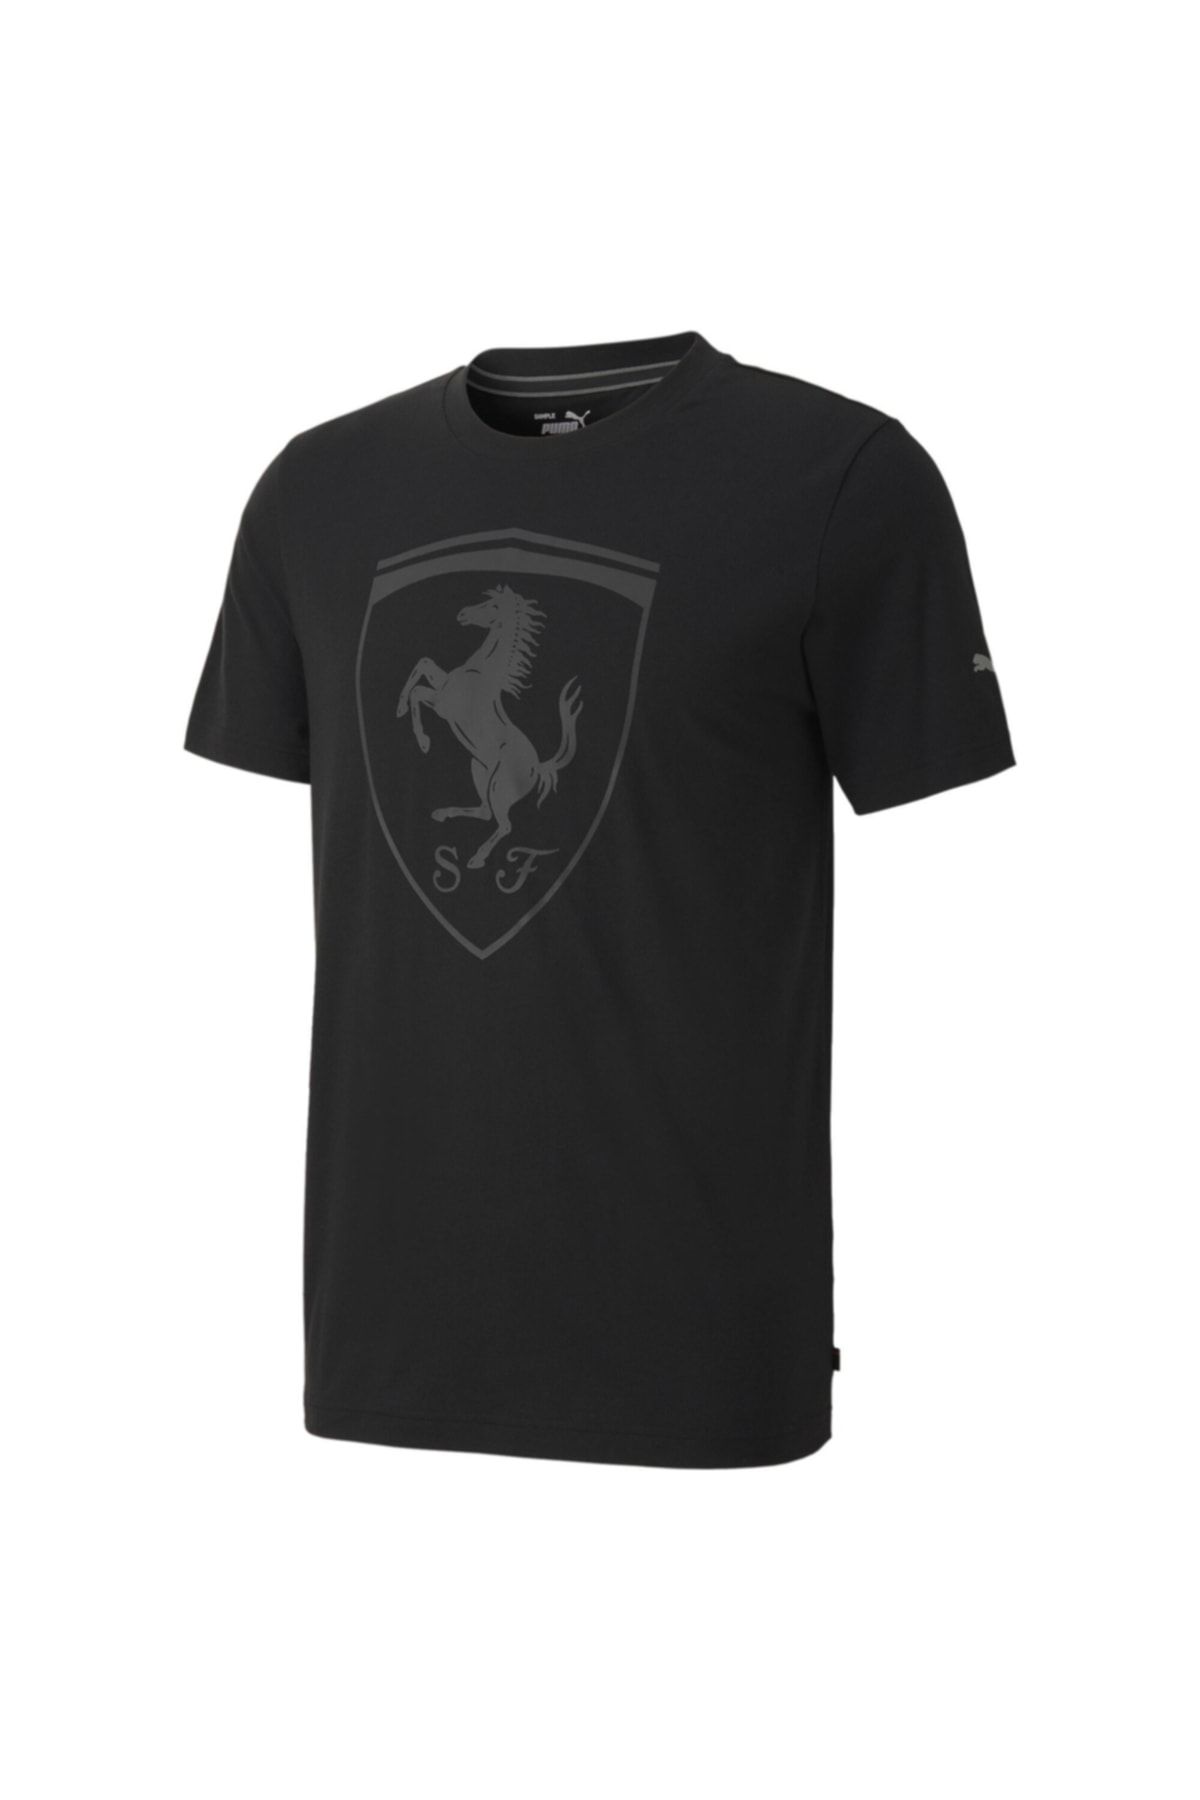 Puma FERRARI STYLE BIG SHIELDT Siyah Erkek T-Shirt 100662704